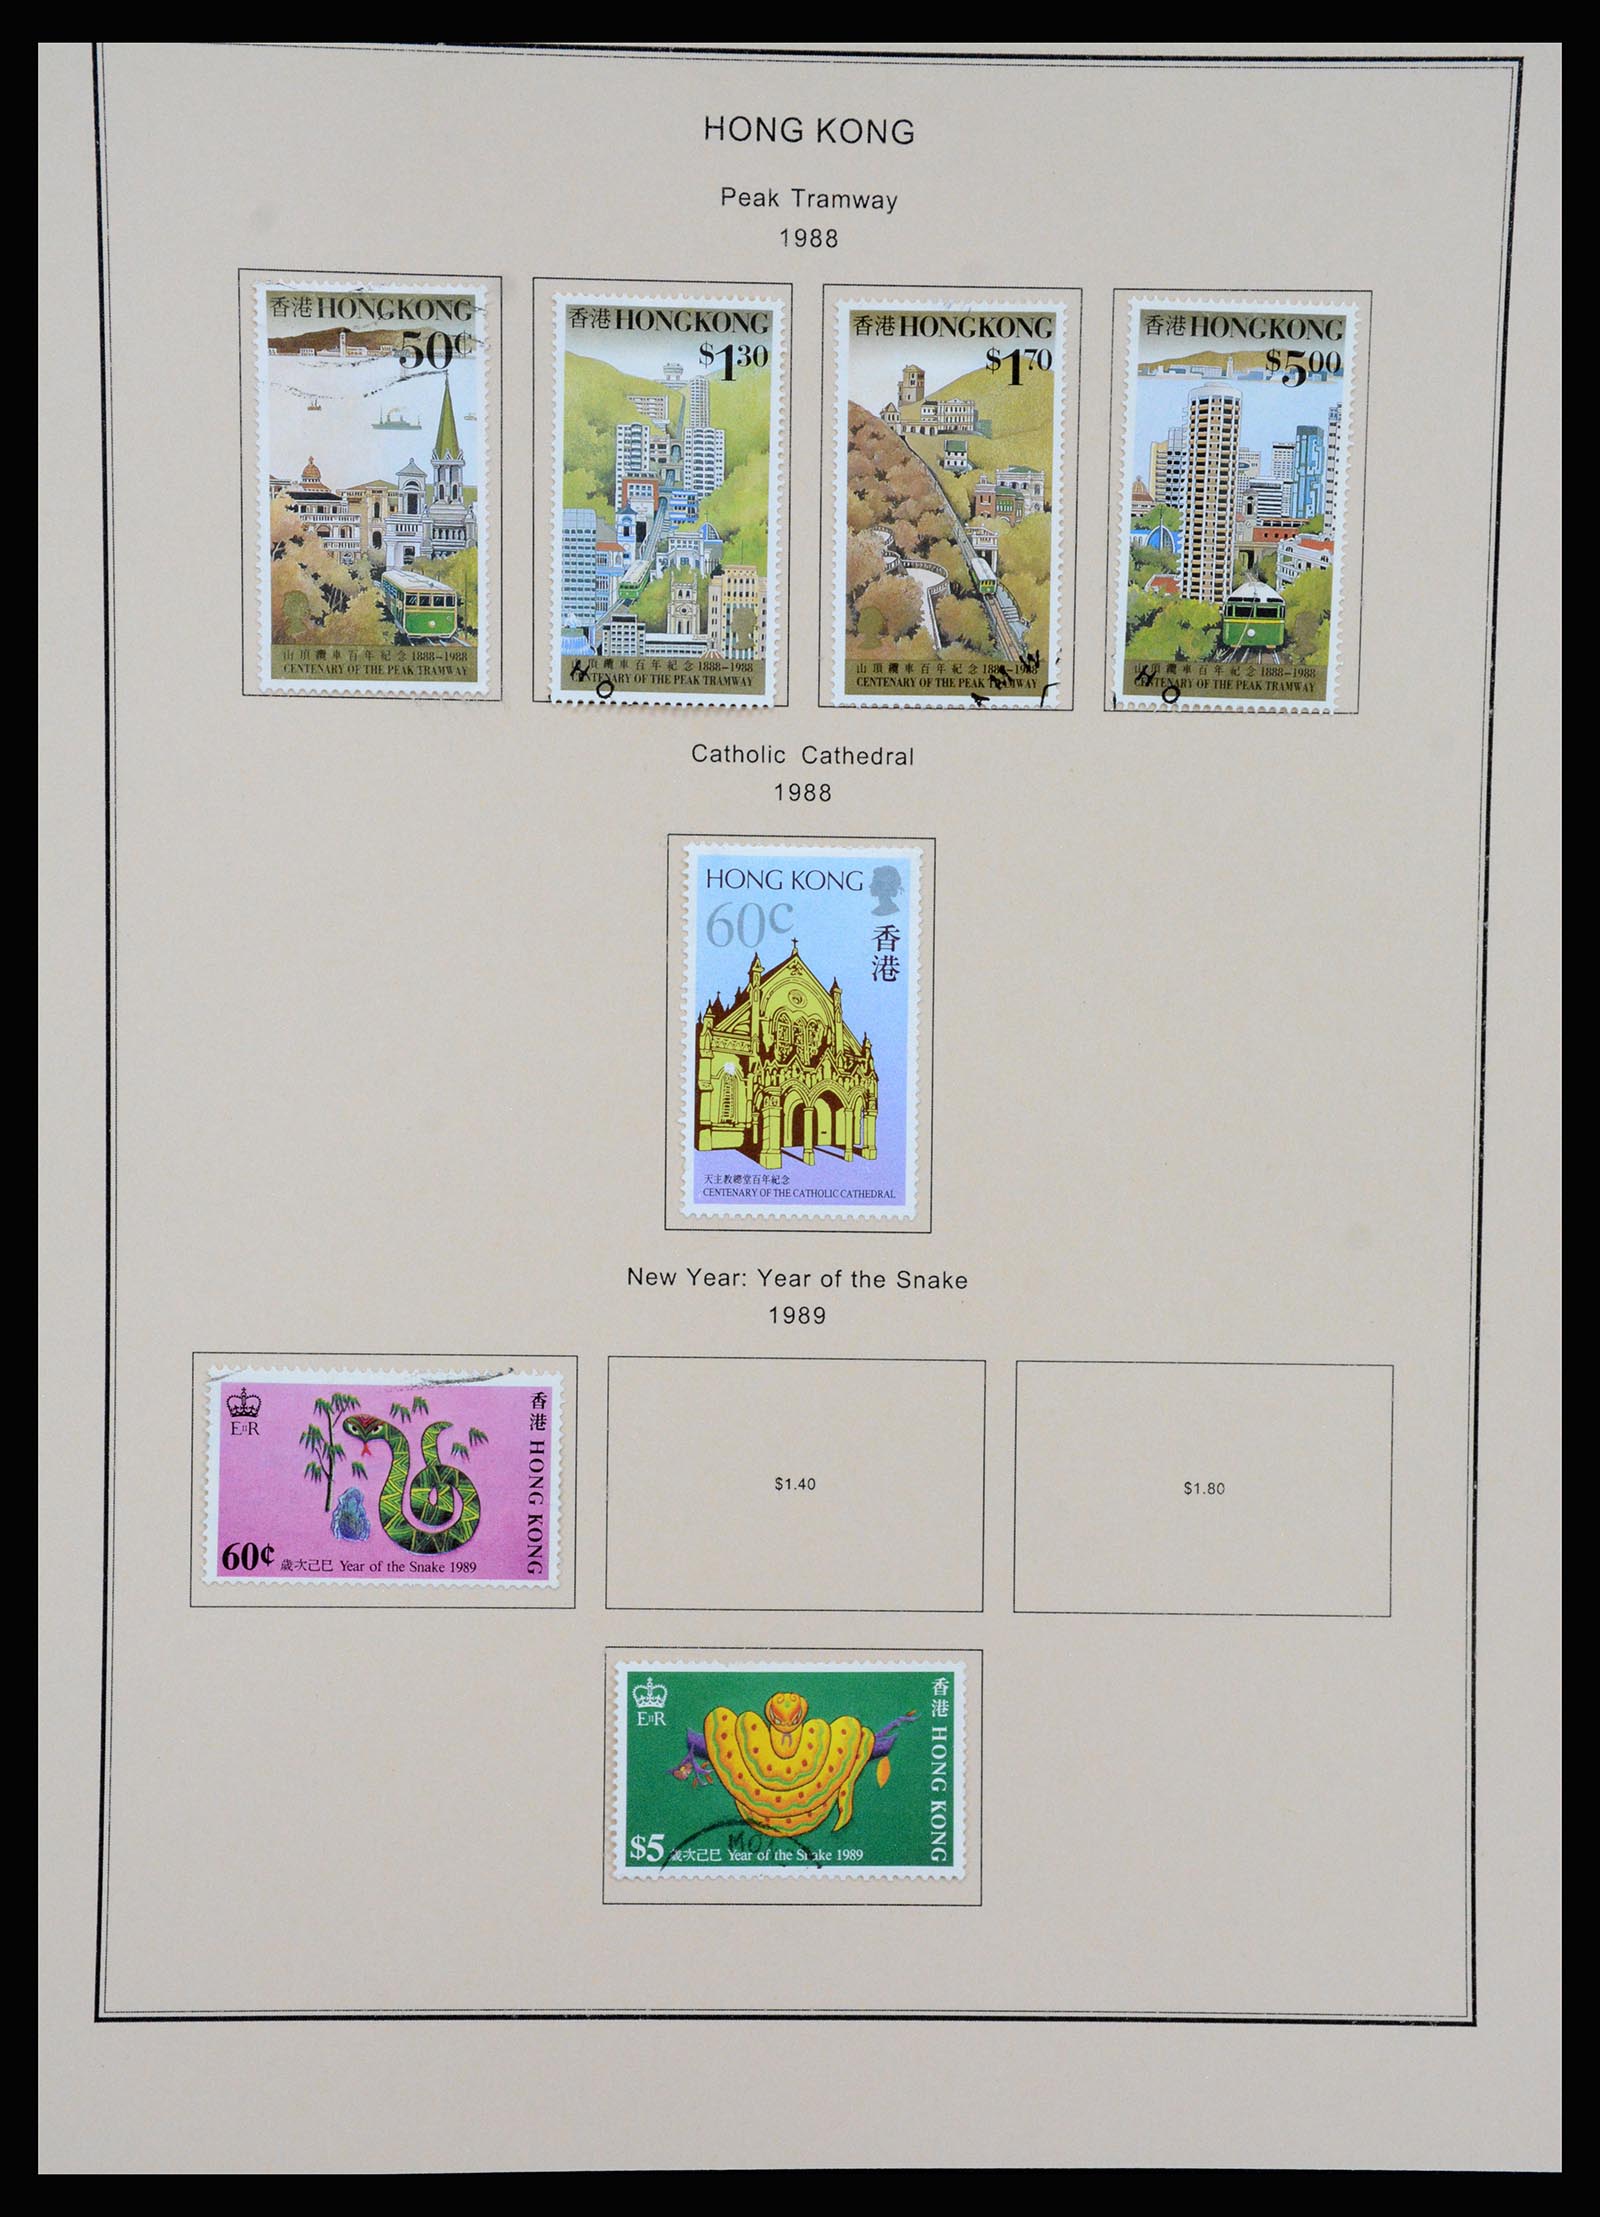 37210 067 - Stamp collection 37210 Hong Kong 1862-2000.